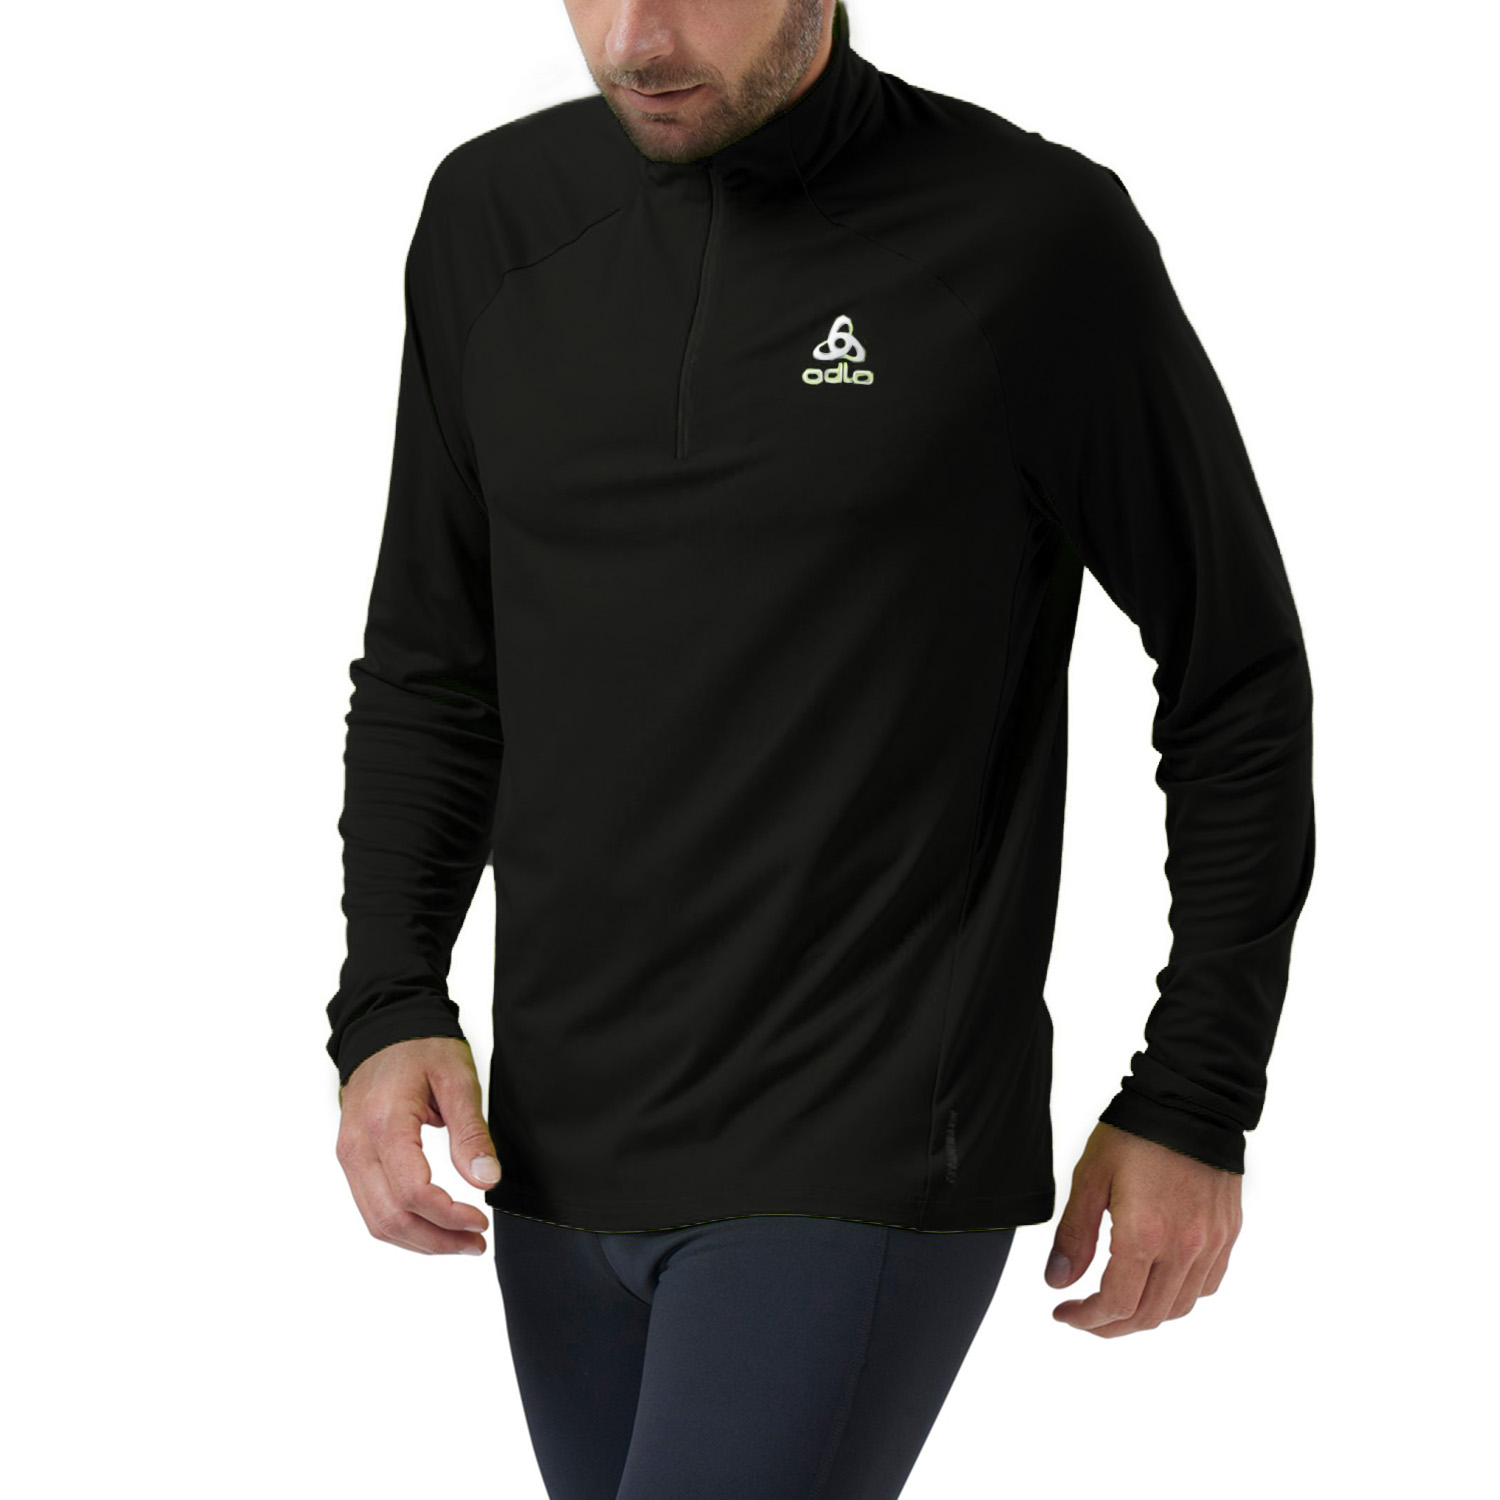 Odlo Essential Ceramiwarm Camisa de Running Hombre - Black